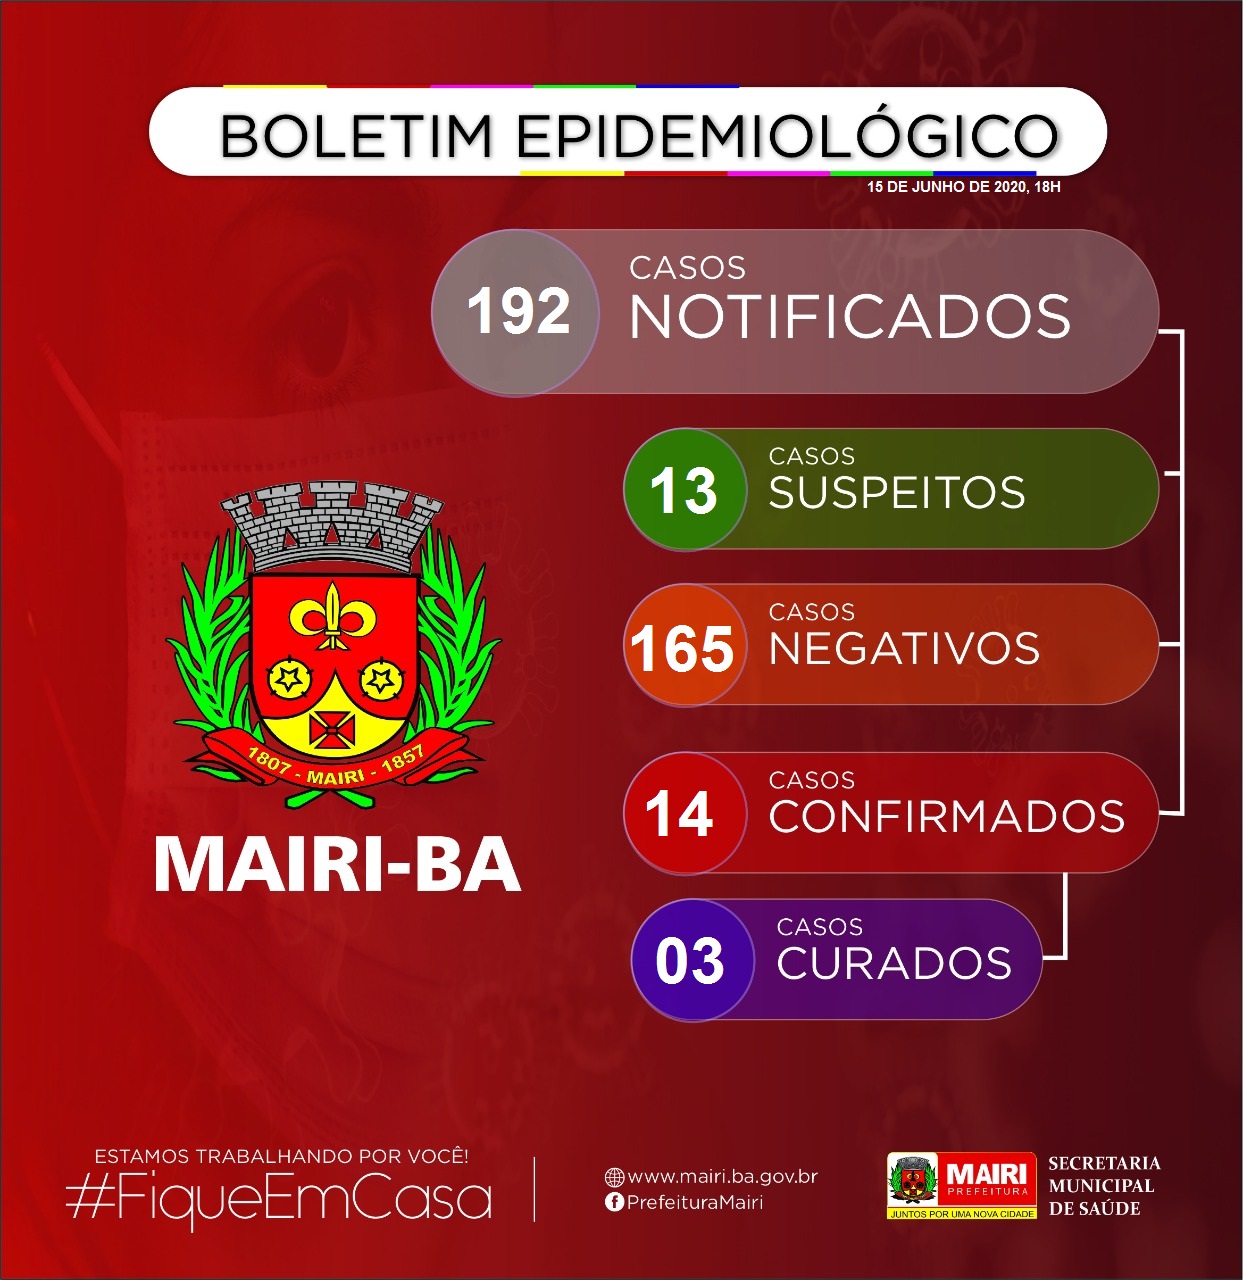 A Prefeitura de Mairi informa à população mairiense a confirmação do 14º caso de Covid-19 no município